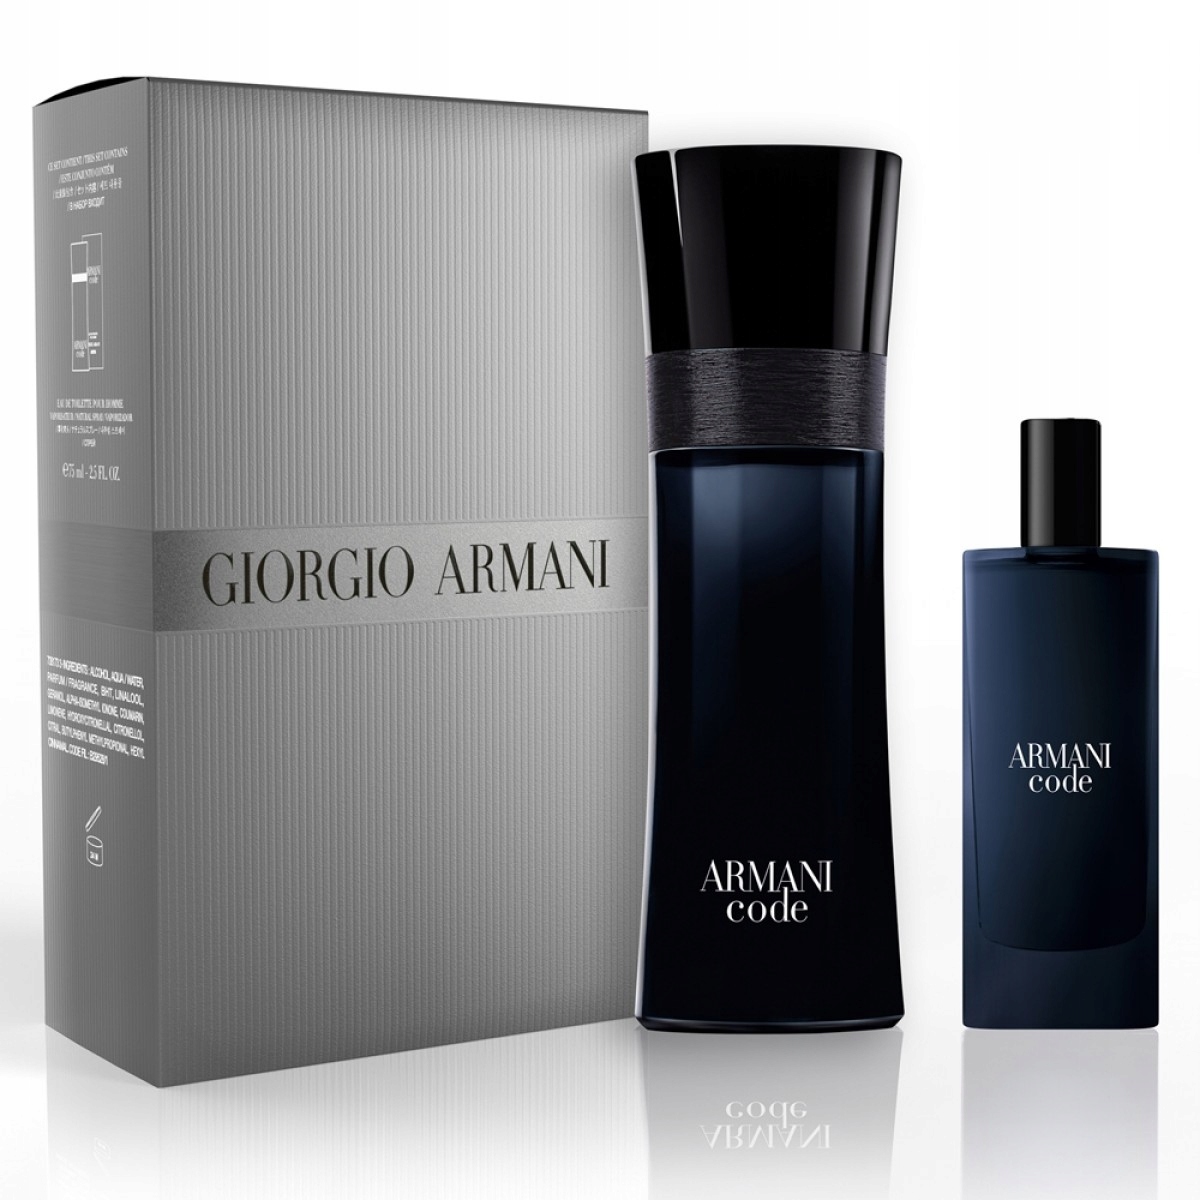 Giorgio armani pour homme. Giorgio Armani code 75мл. Armani code pour homme Gift Set. Armani code Travel Exclusive. Armani code Travel.